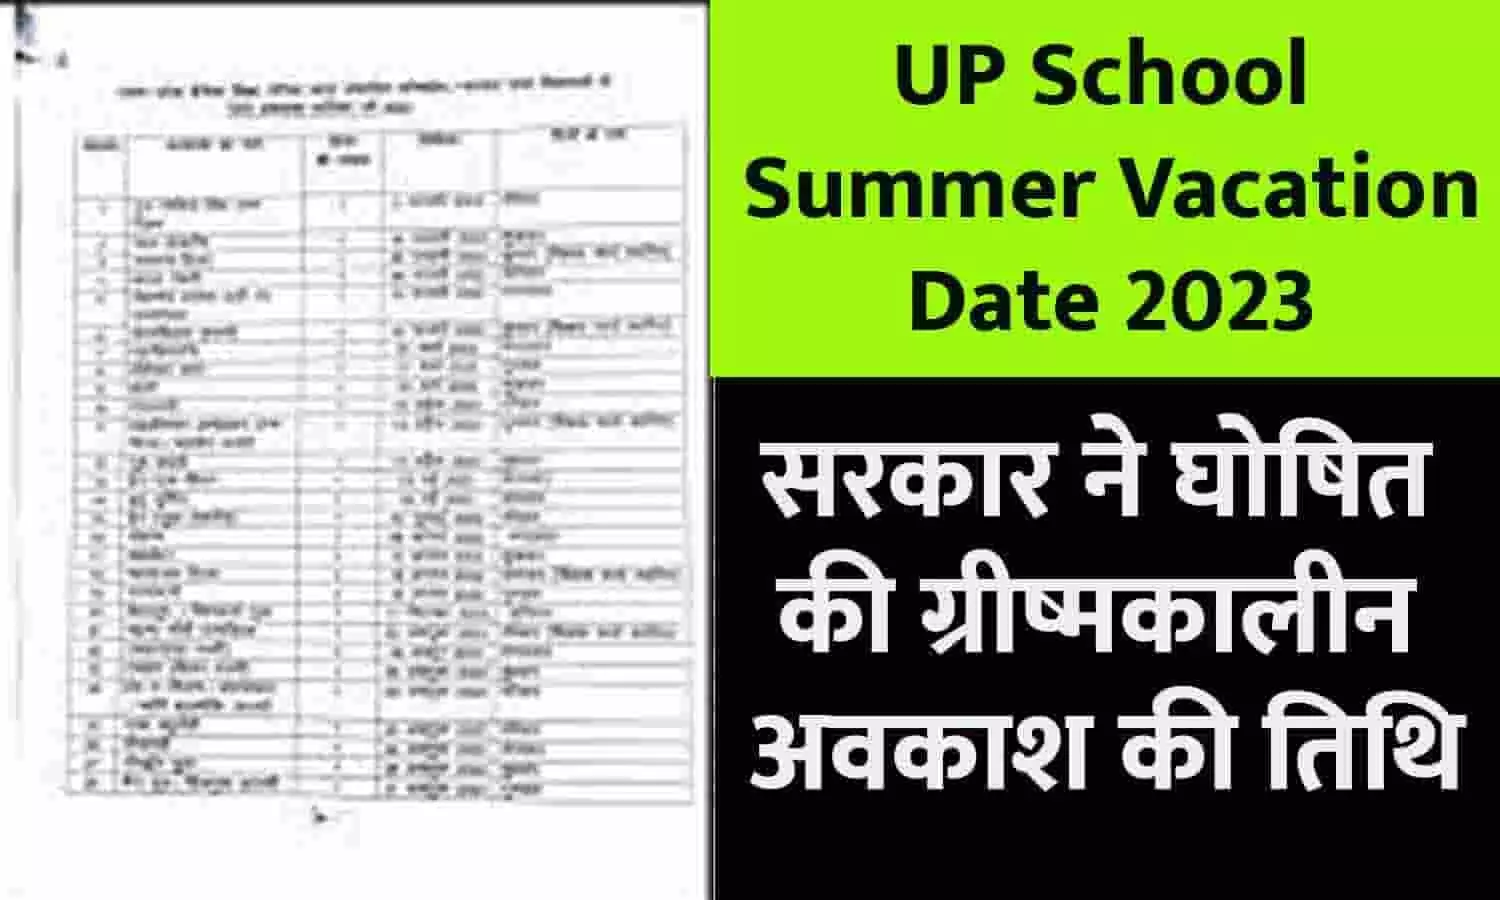 UP School Summer Vacation Date 2023: यूपी में 1 से 8 तक के स्कूल बंद, सरकार ने घोषित की ग्रीष्मकालीन अवकाश की तिथि